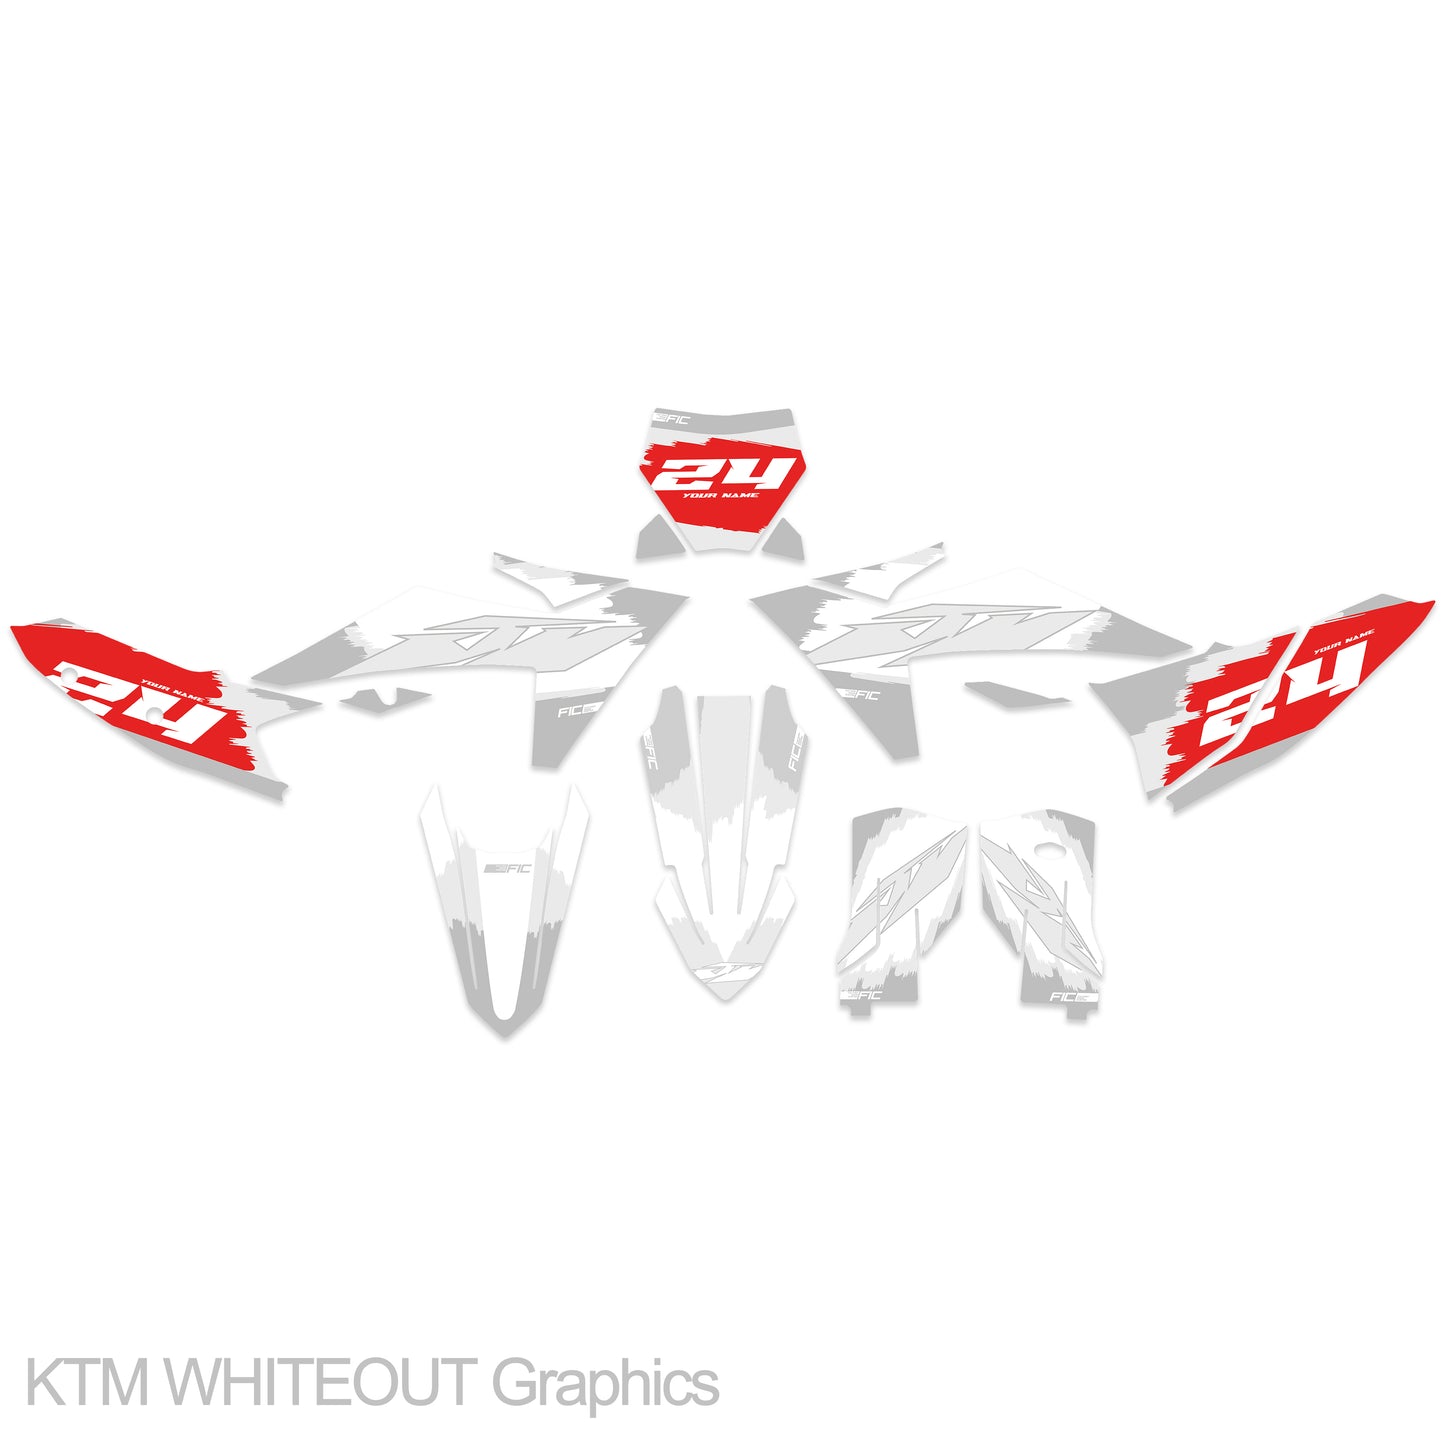 KTM SX 65 2016 - 2018 WHITEOUT Graphics kit